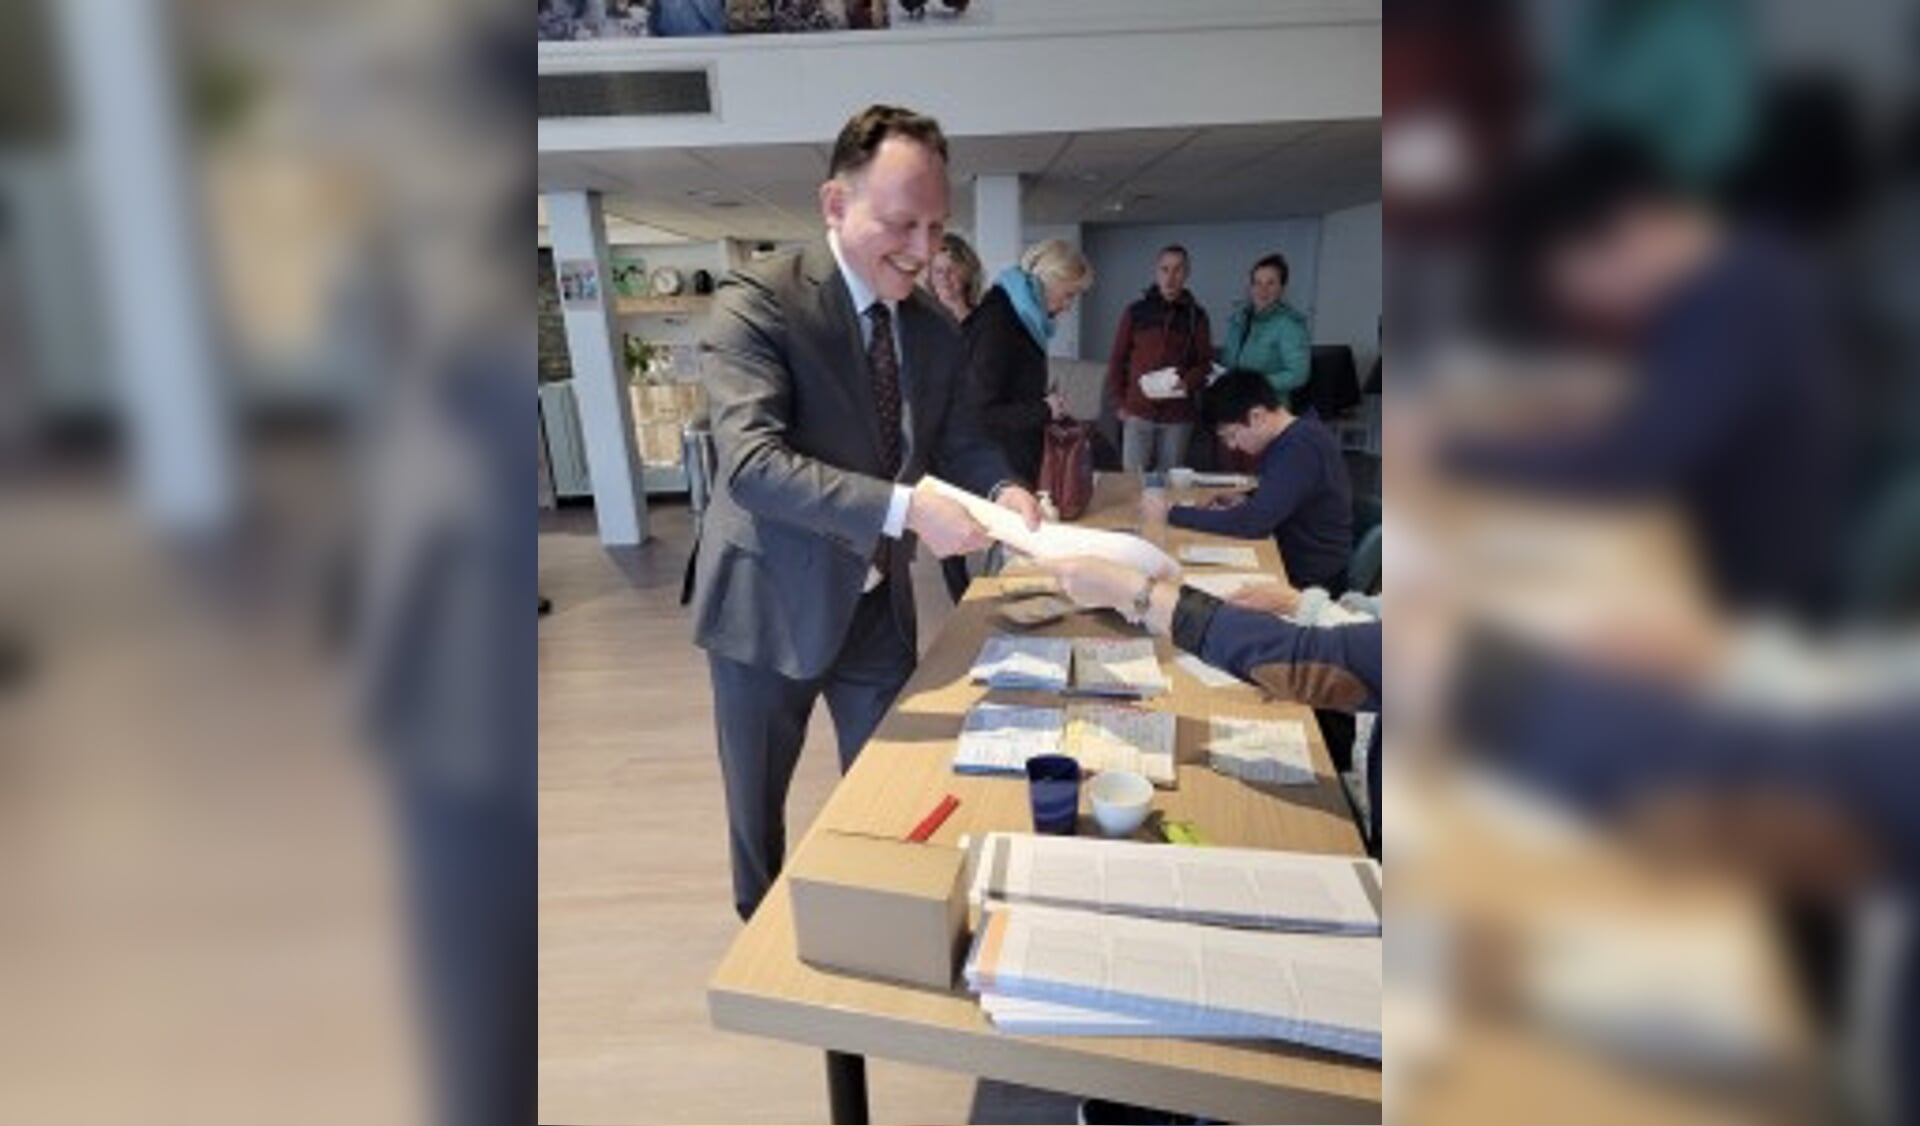 Burgemeester Ap Reinders bracht aan veel verschillende stembureaus in de gemeente vandaag een bezoekje. In Loenen aan de Vecht bracht hij net zelf zijn stem uit!